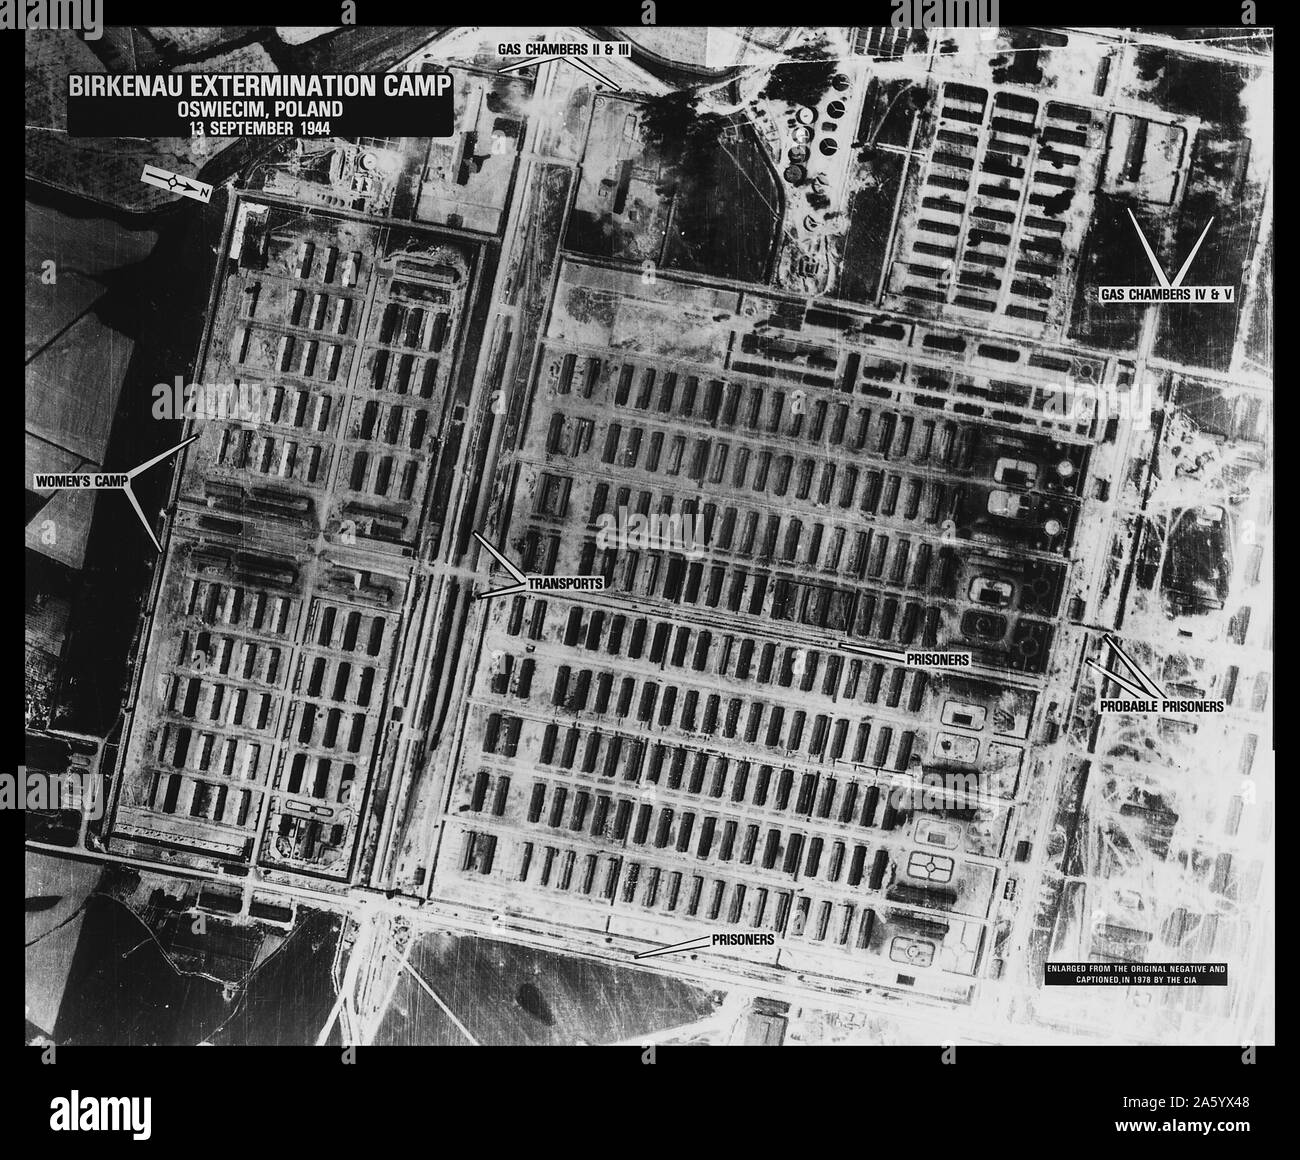 Birkenau Extermination Camp - Oswiecim, Poland, World war Two 1944 Stock Photo